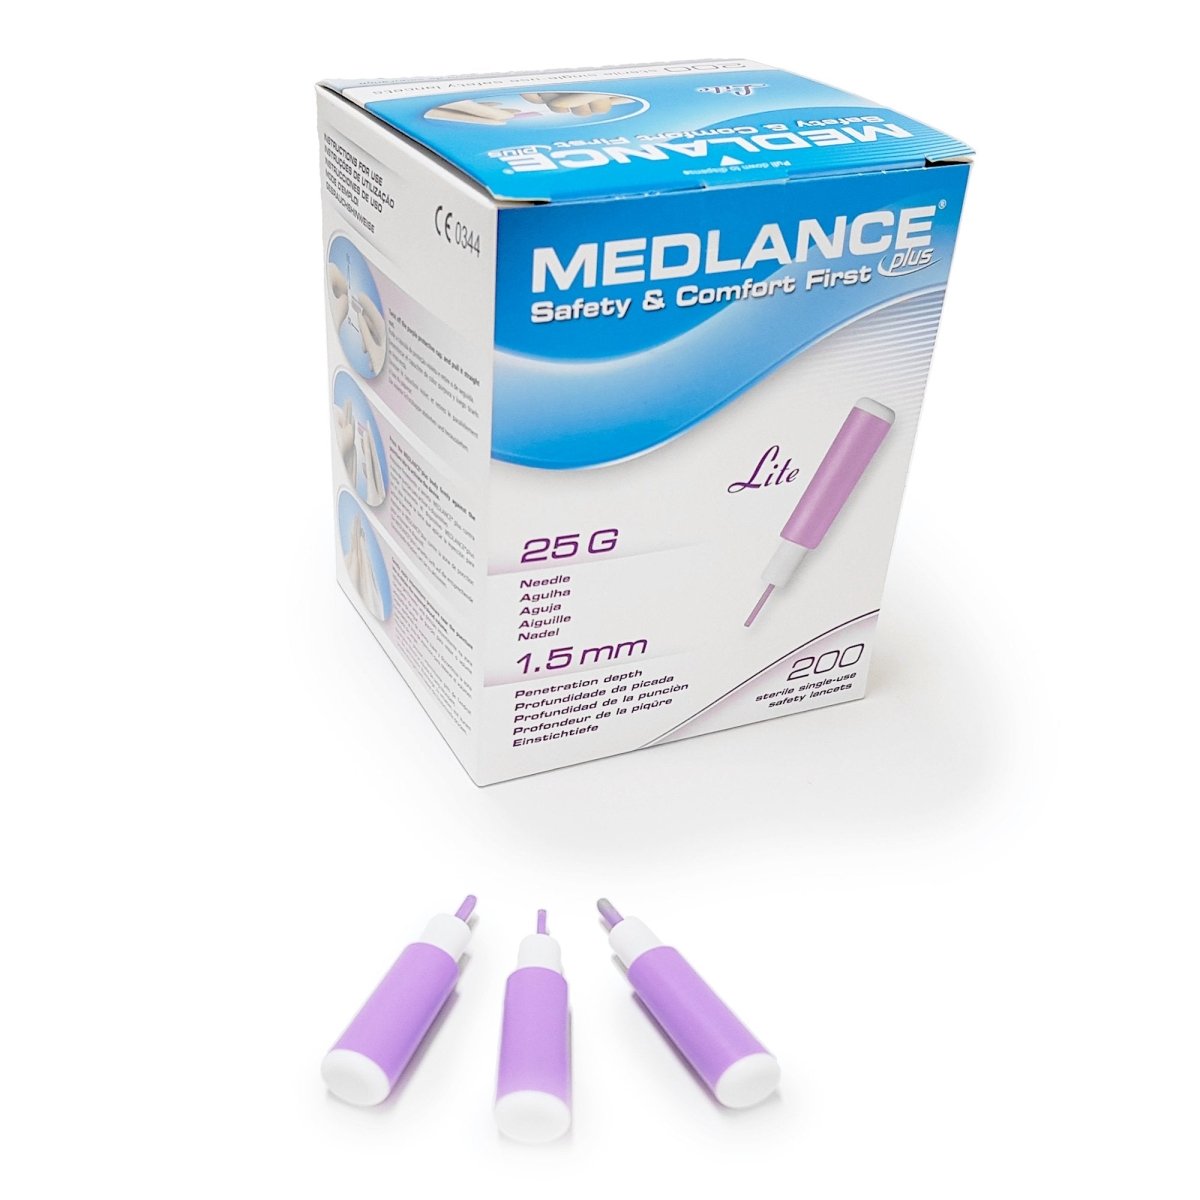 Medlance Plus Safety Lancets - 874659_BX - 2